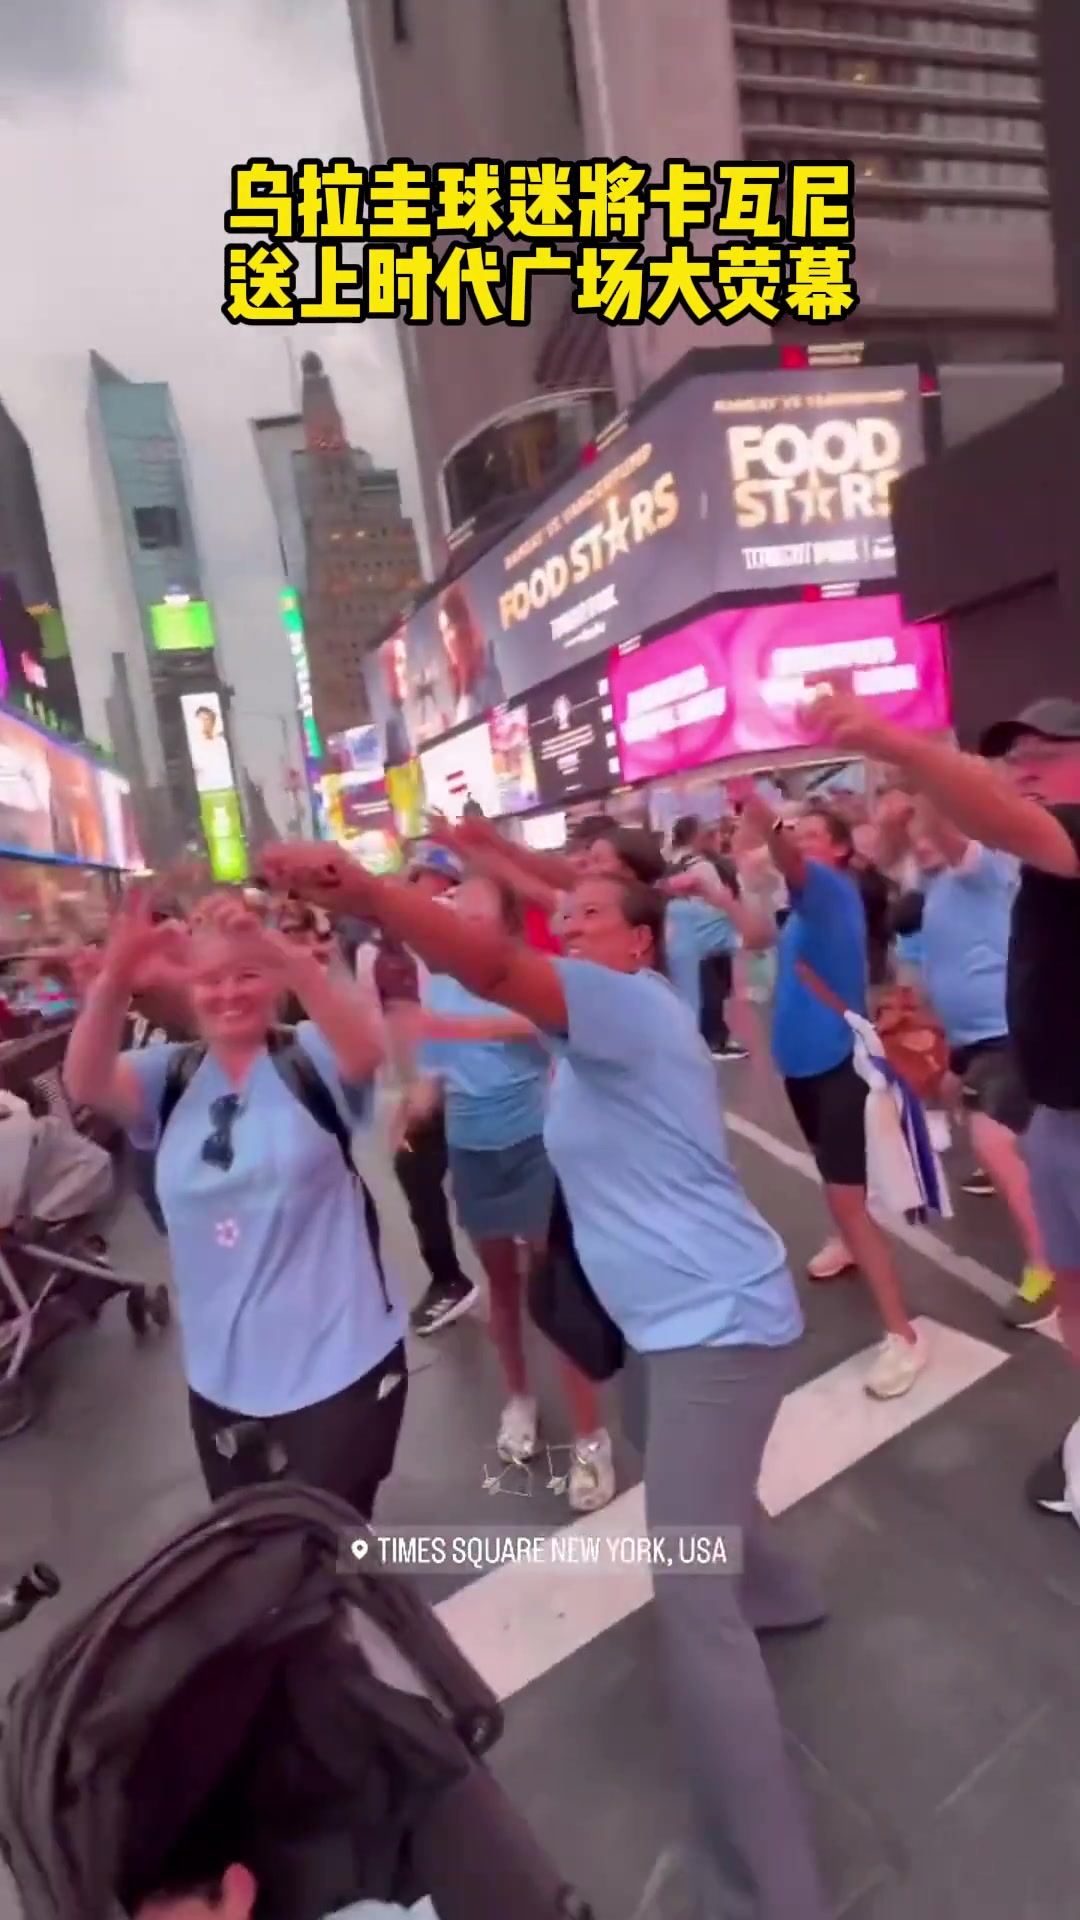 “张弓搭箭”！乌拉圭球迷将卡瓦尼送上时代广场大荧幕